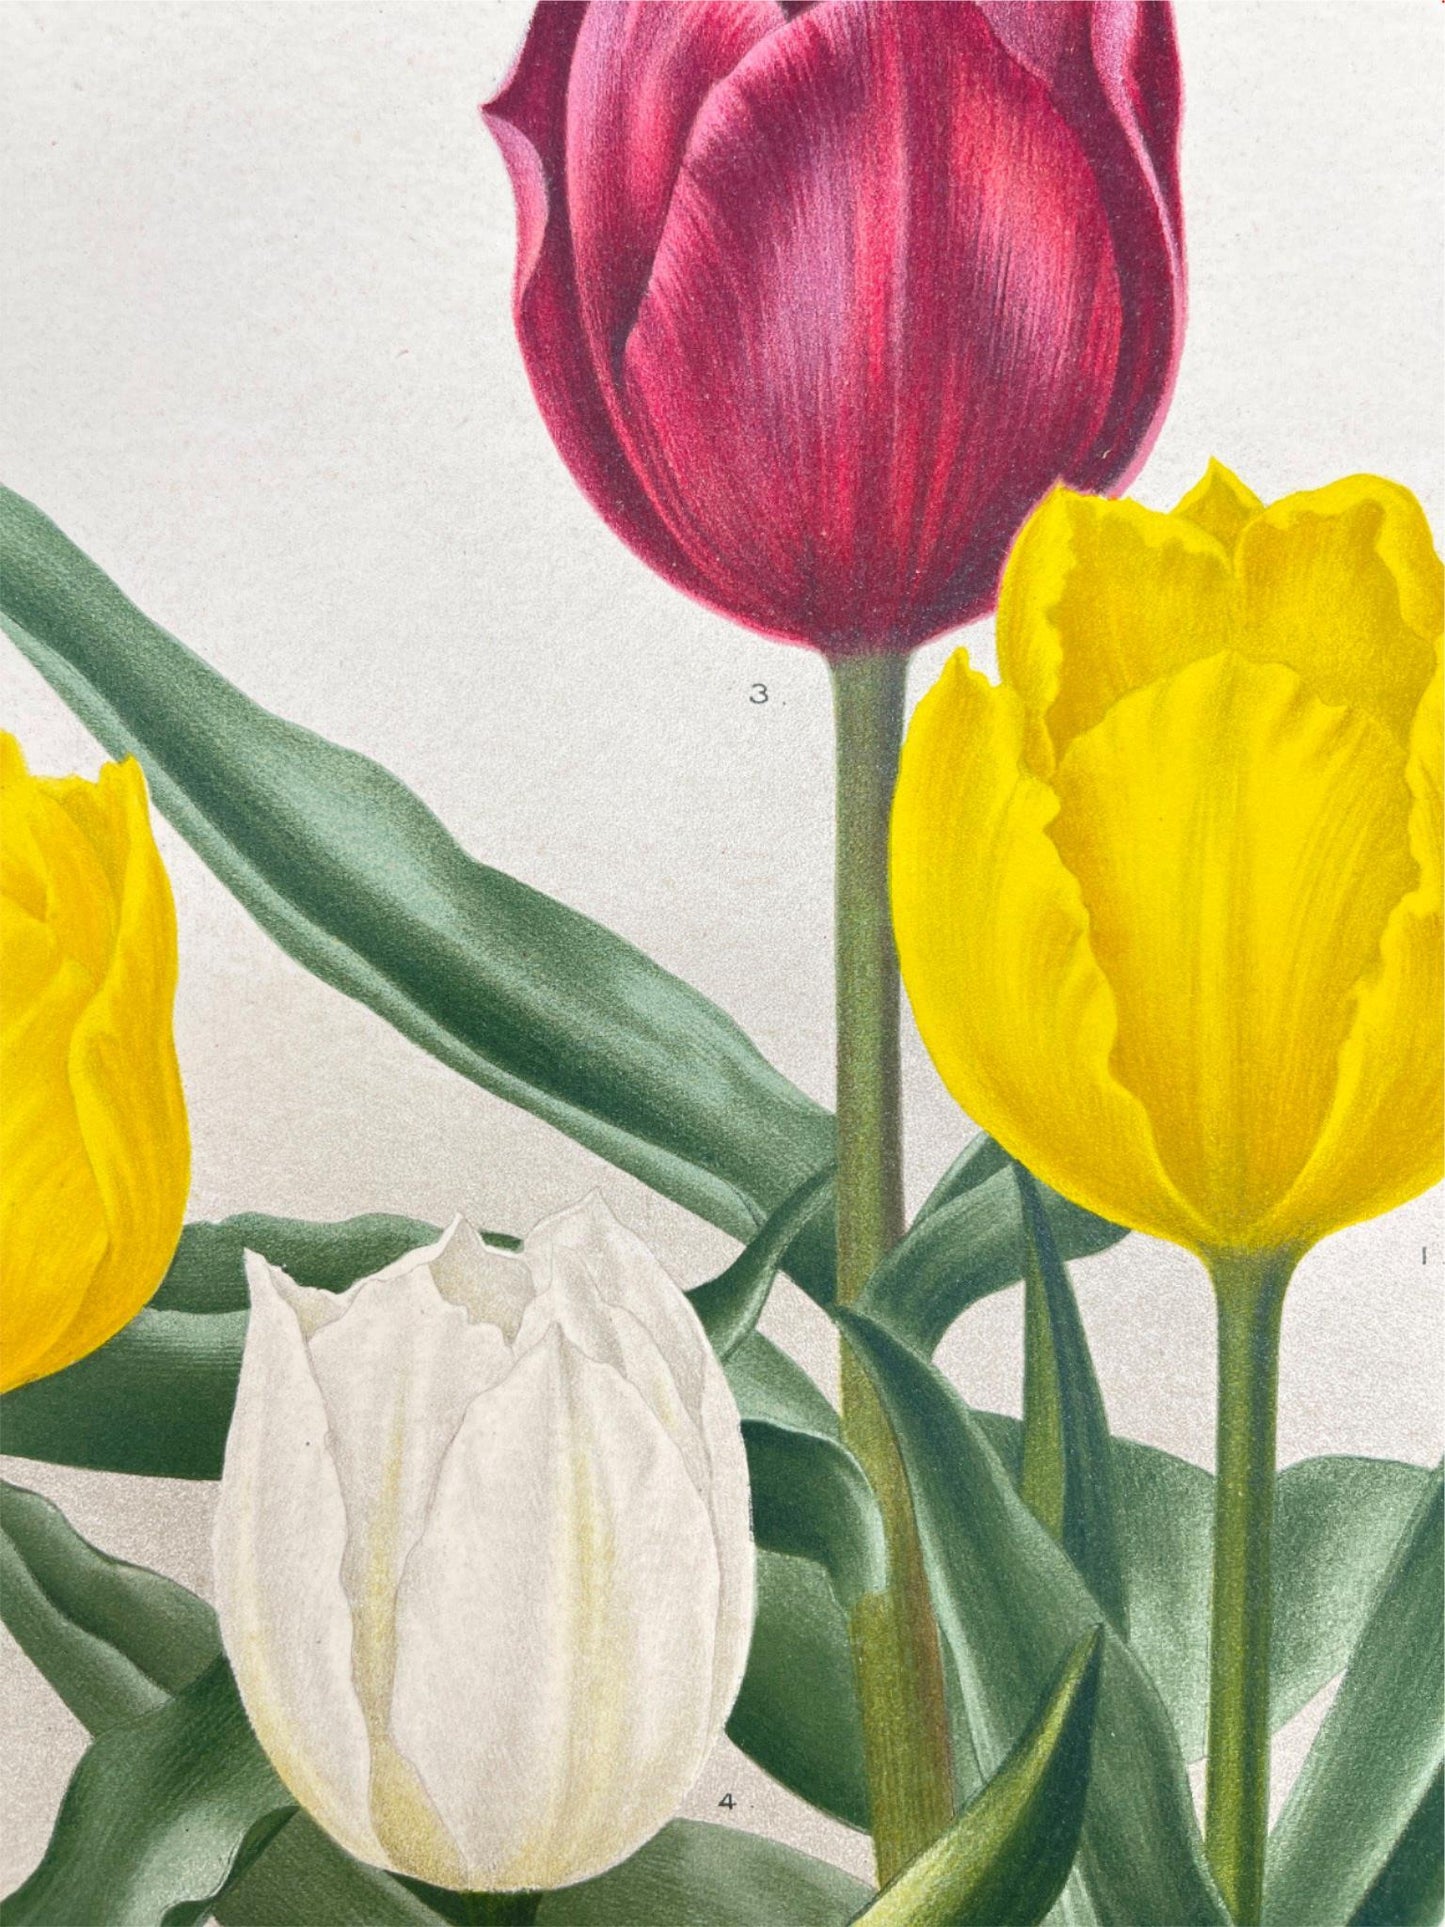 Antique Botanical Print - Flower Art - Chrysolora - Goffart & Severeijns - Dahlströms Fine Art